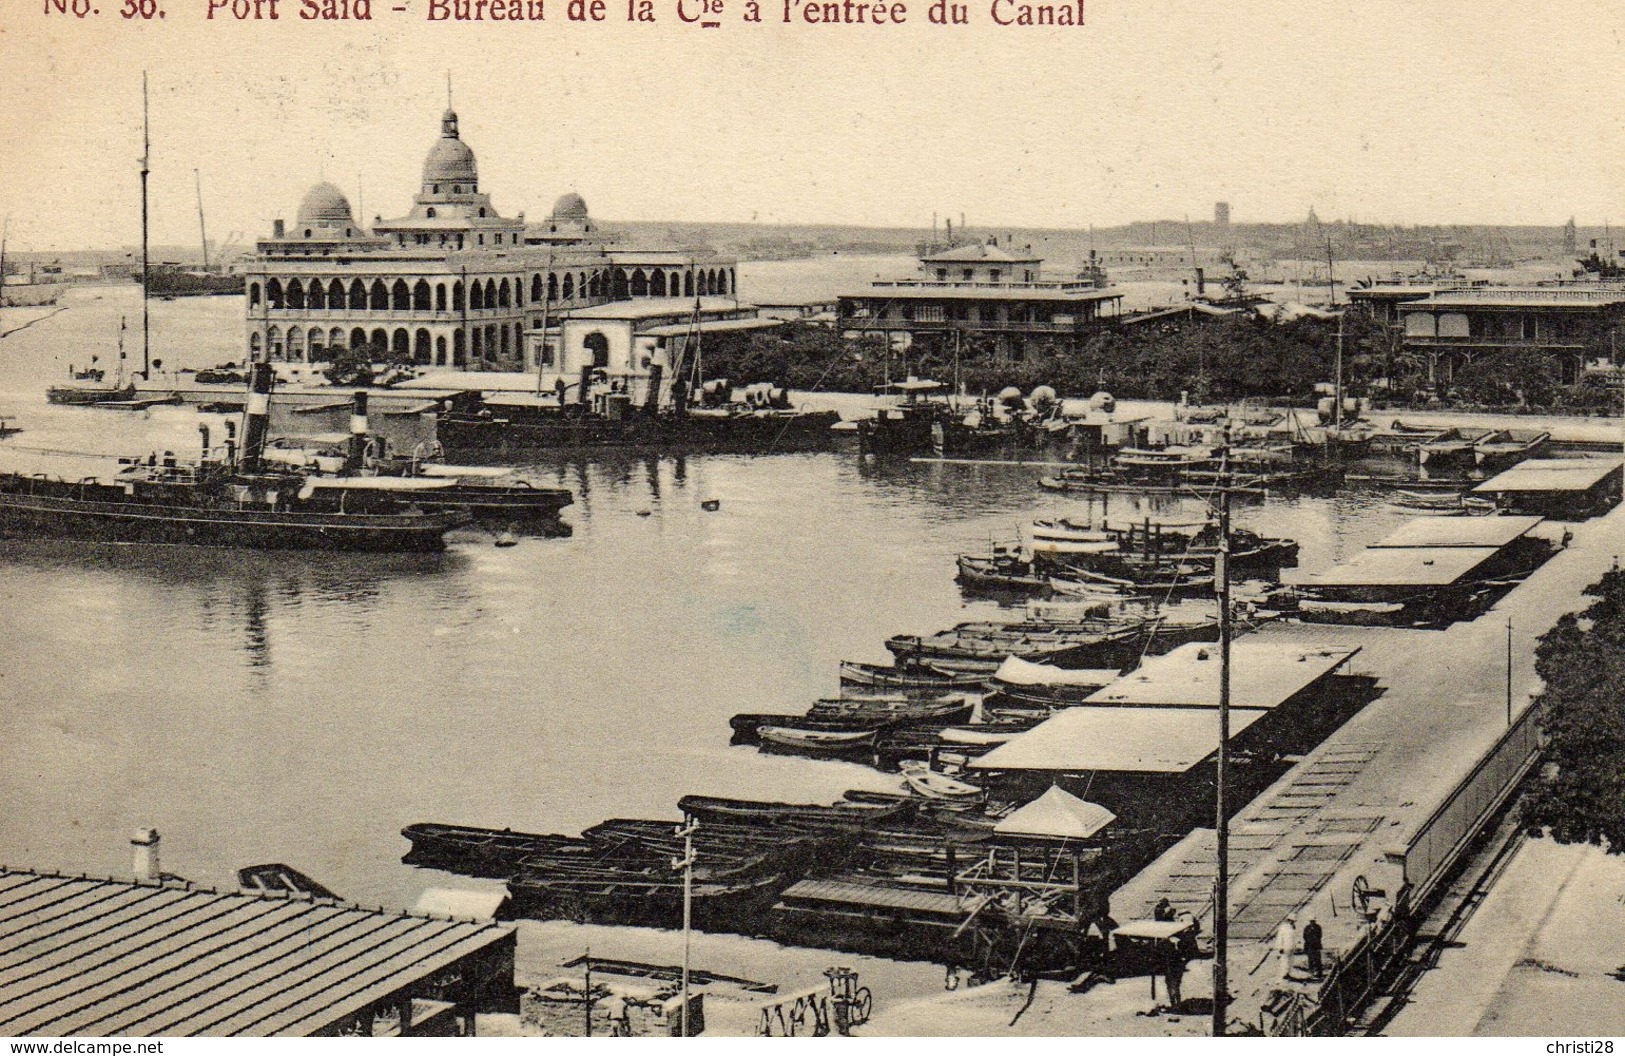 EGYPTE PORT-SAID Bureau De La Cie à L'entrée Du Canal - Port-Saïd